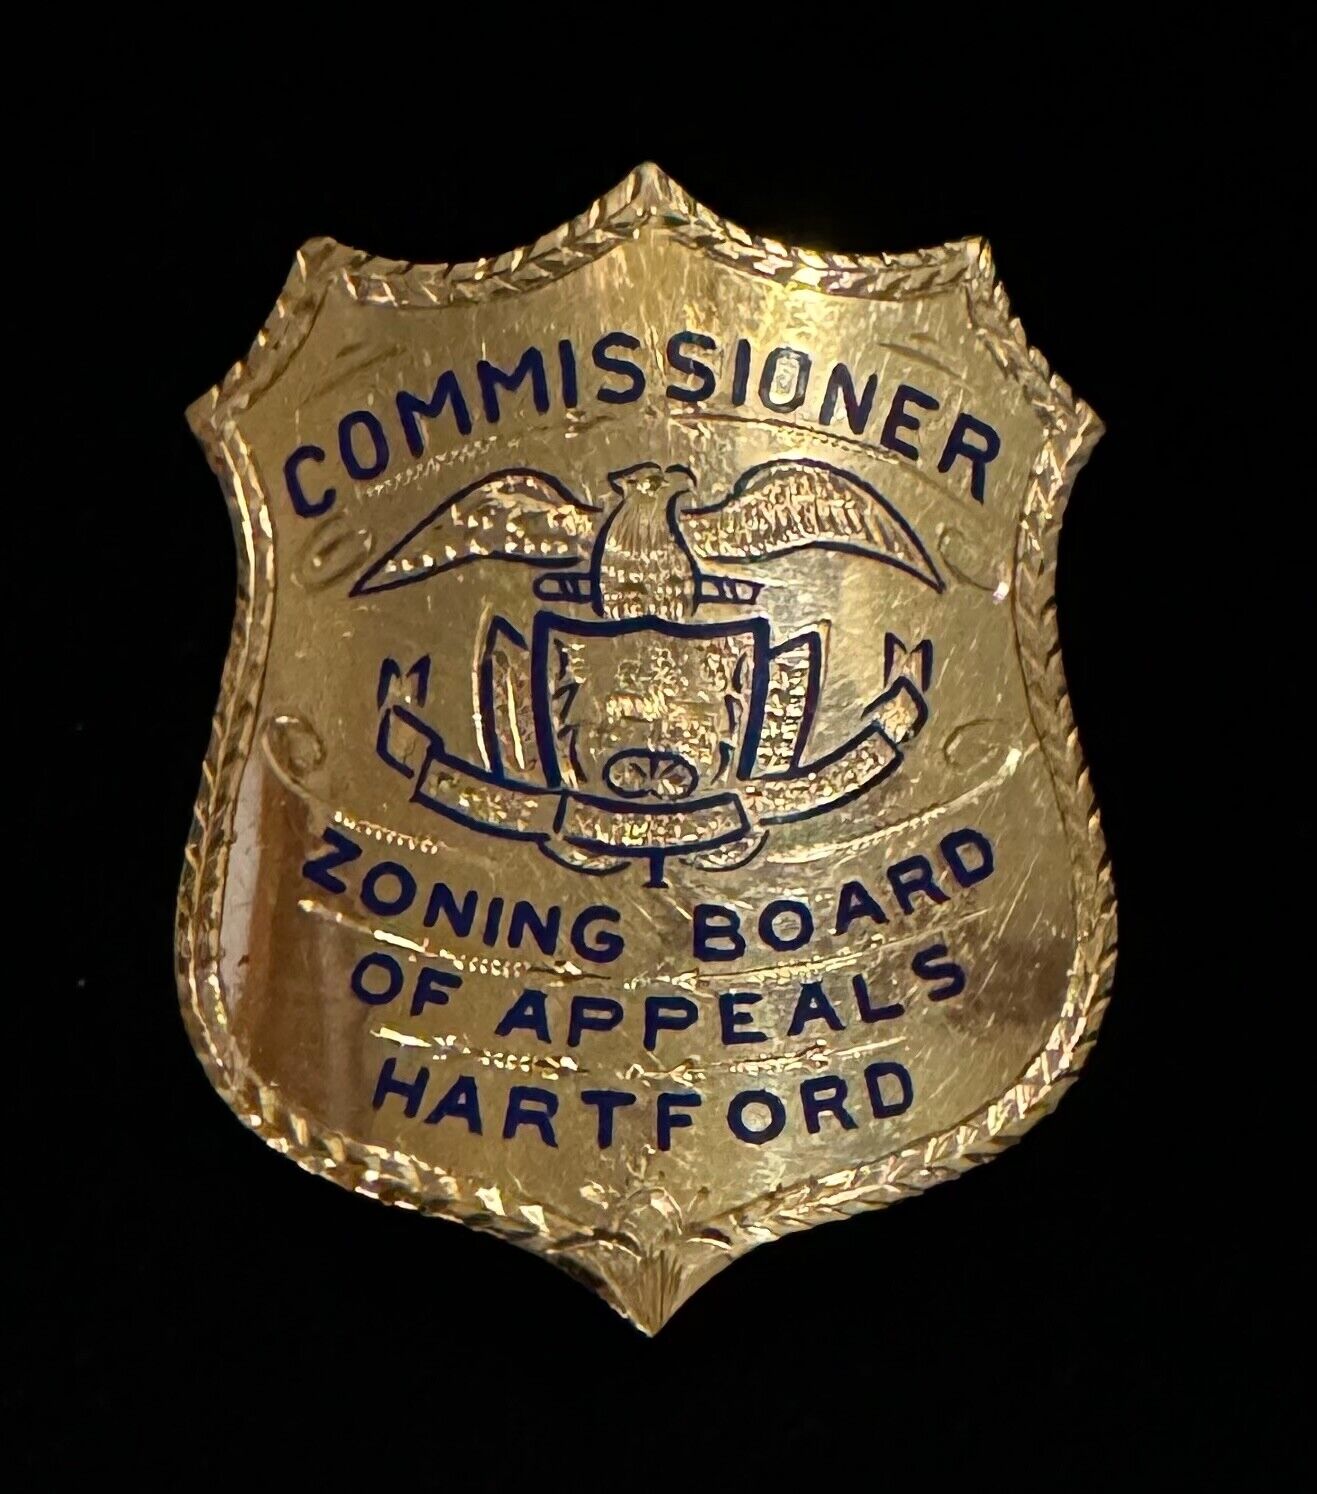 1929 Hartford CT Commissioner Engraved 14k Gold Badge Zoning Board of Appeals